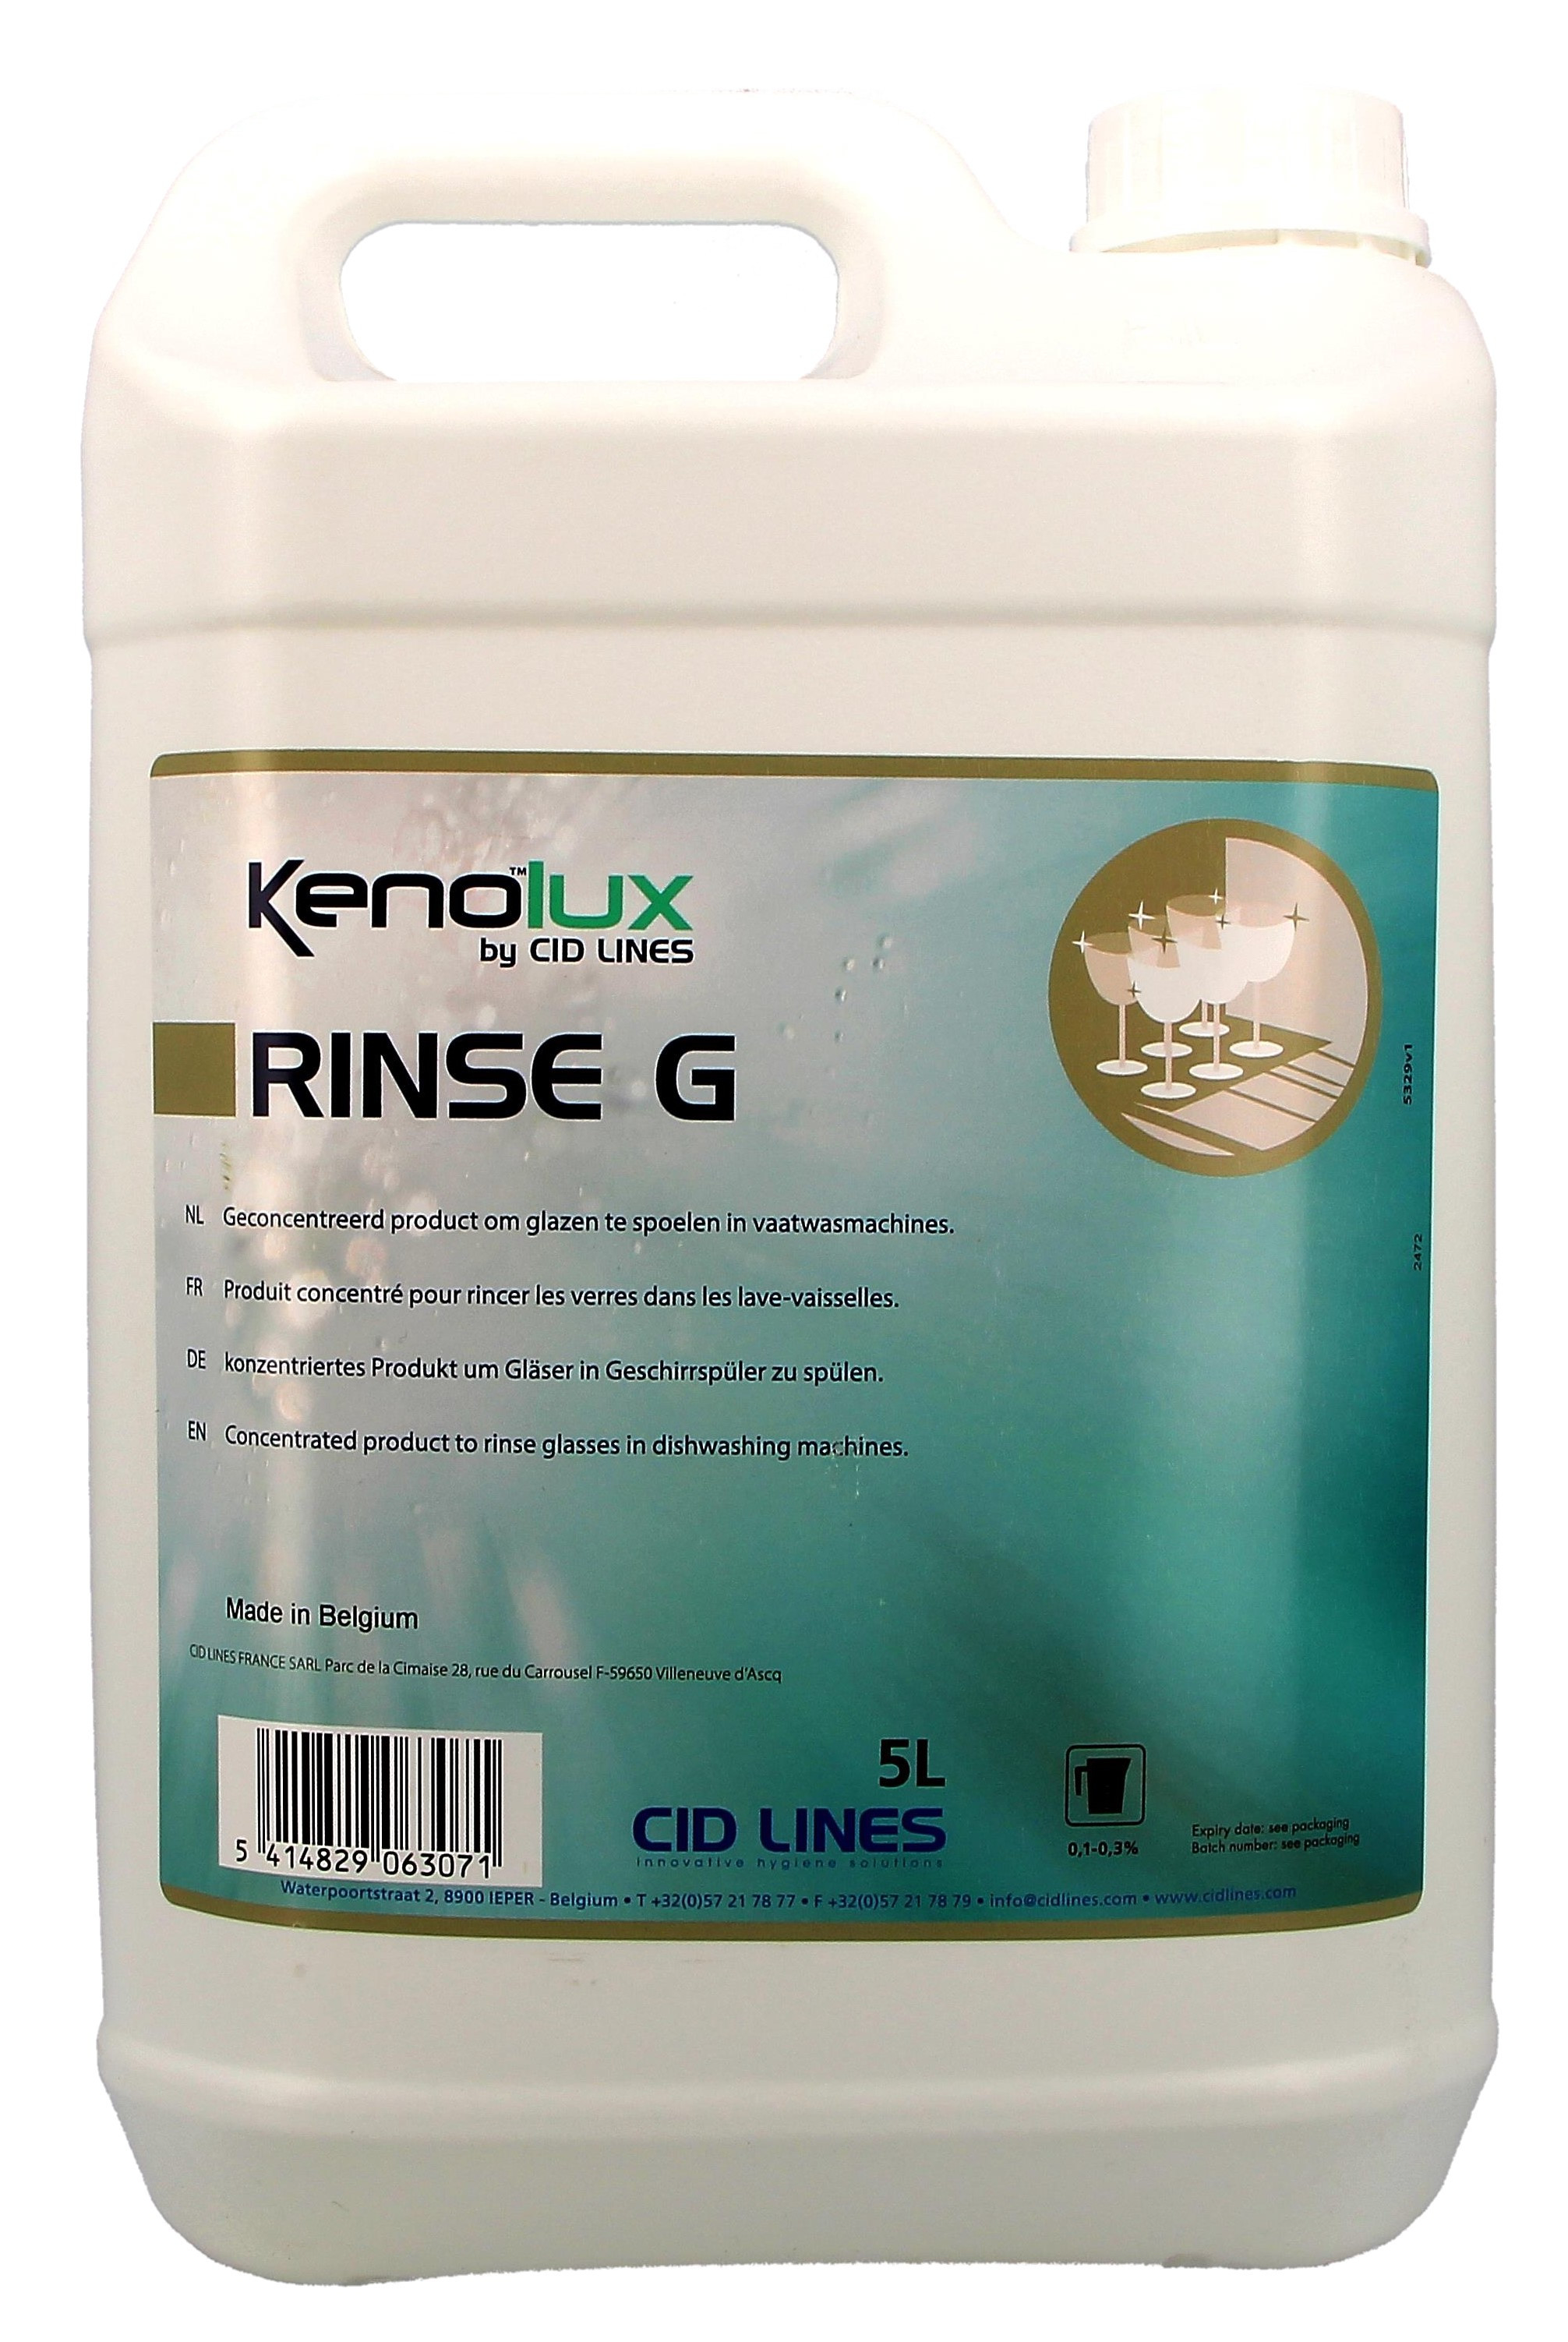 Kenolux Rinse G 5L glansspoelmiddel speciaal voor glazenwassers Cid Lines (Vaatwasproducten)